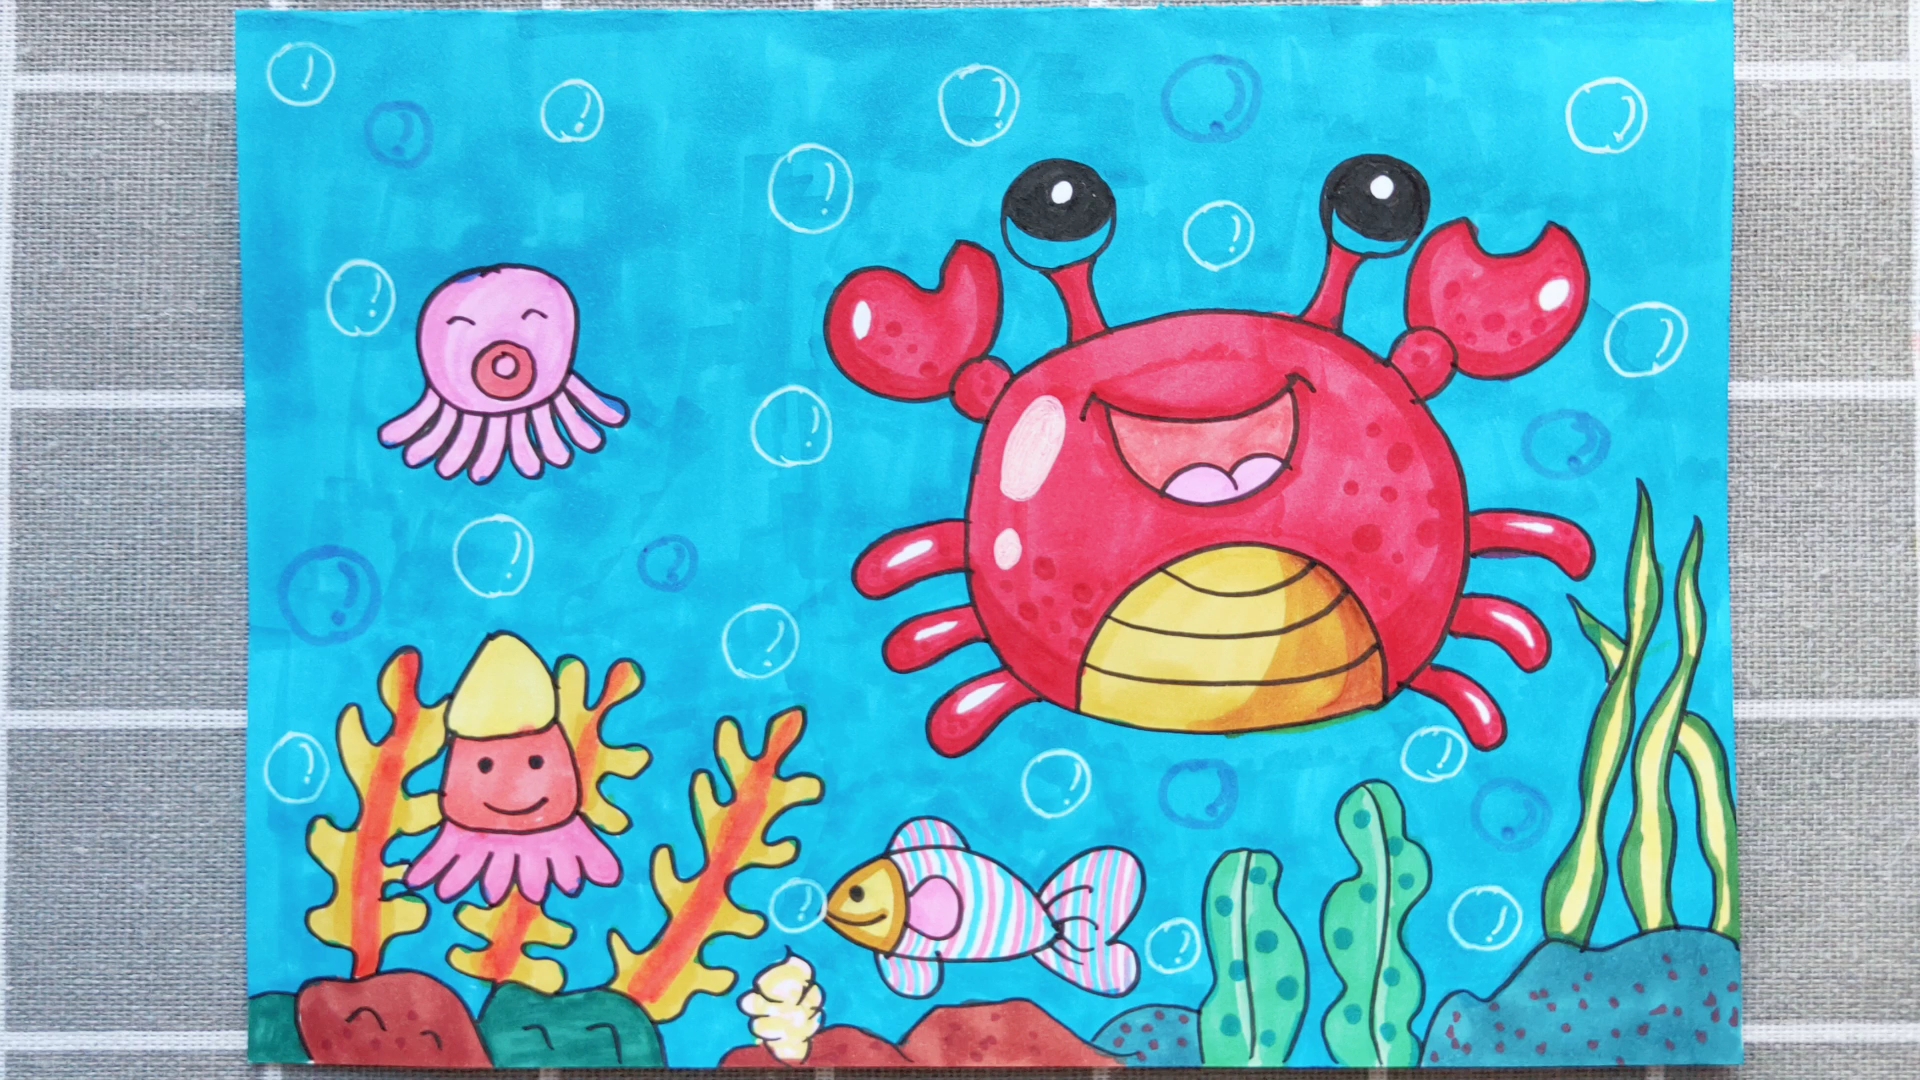 接着画一些其他的海底生物 3.可以画上小鱼 4.